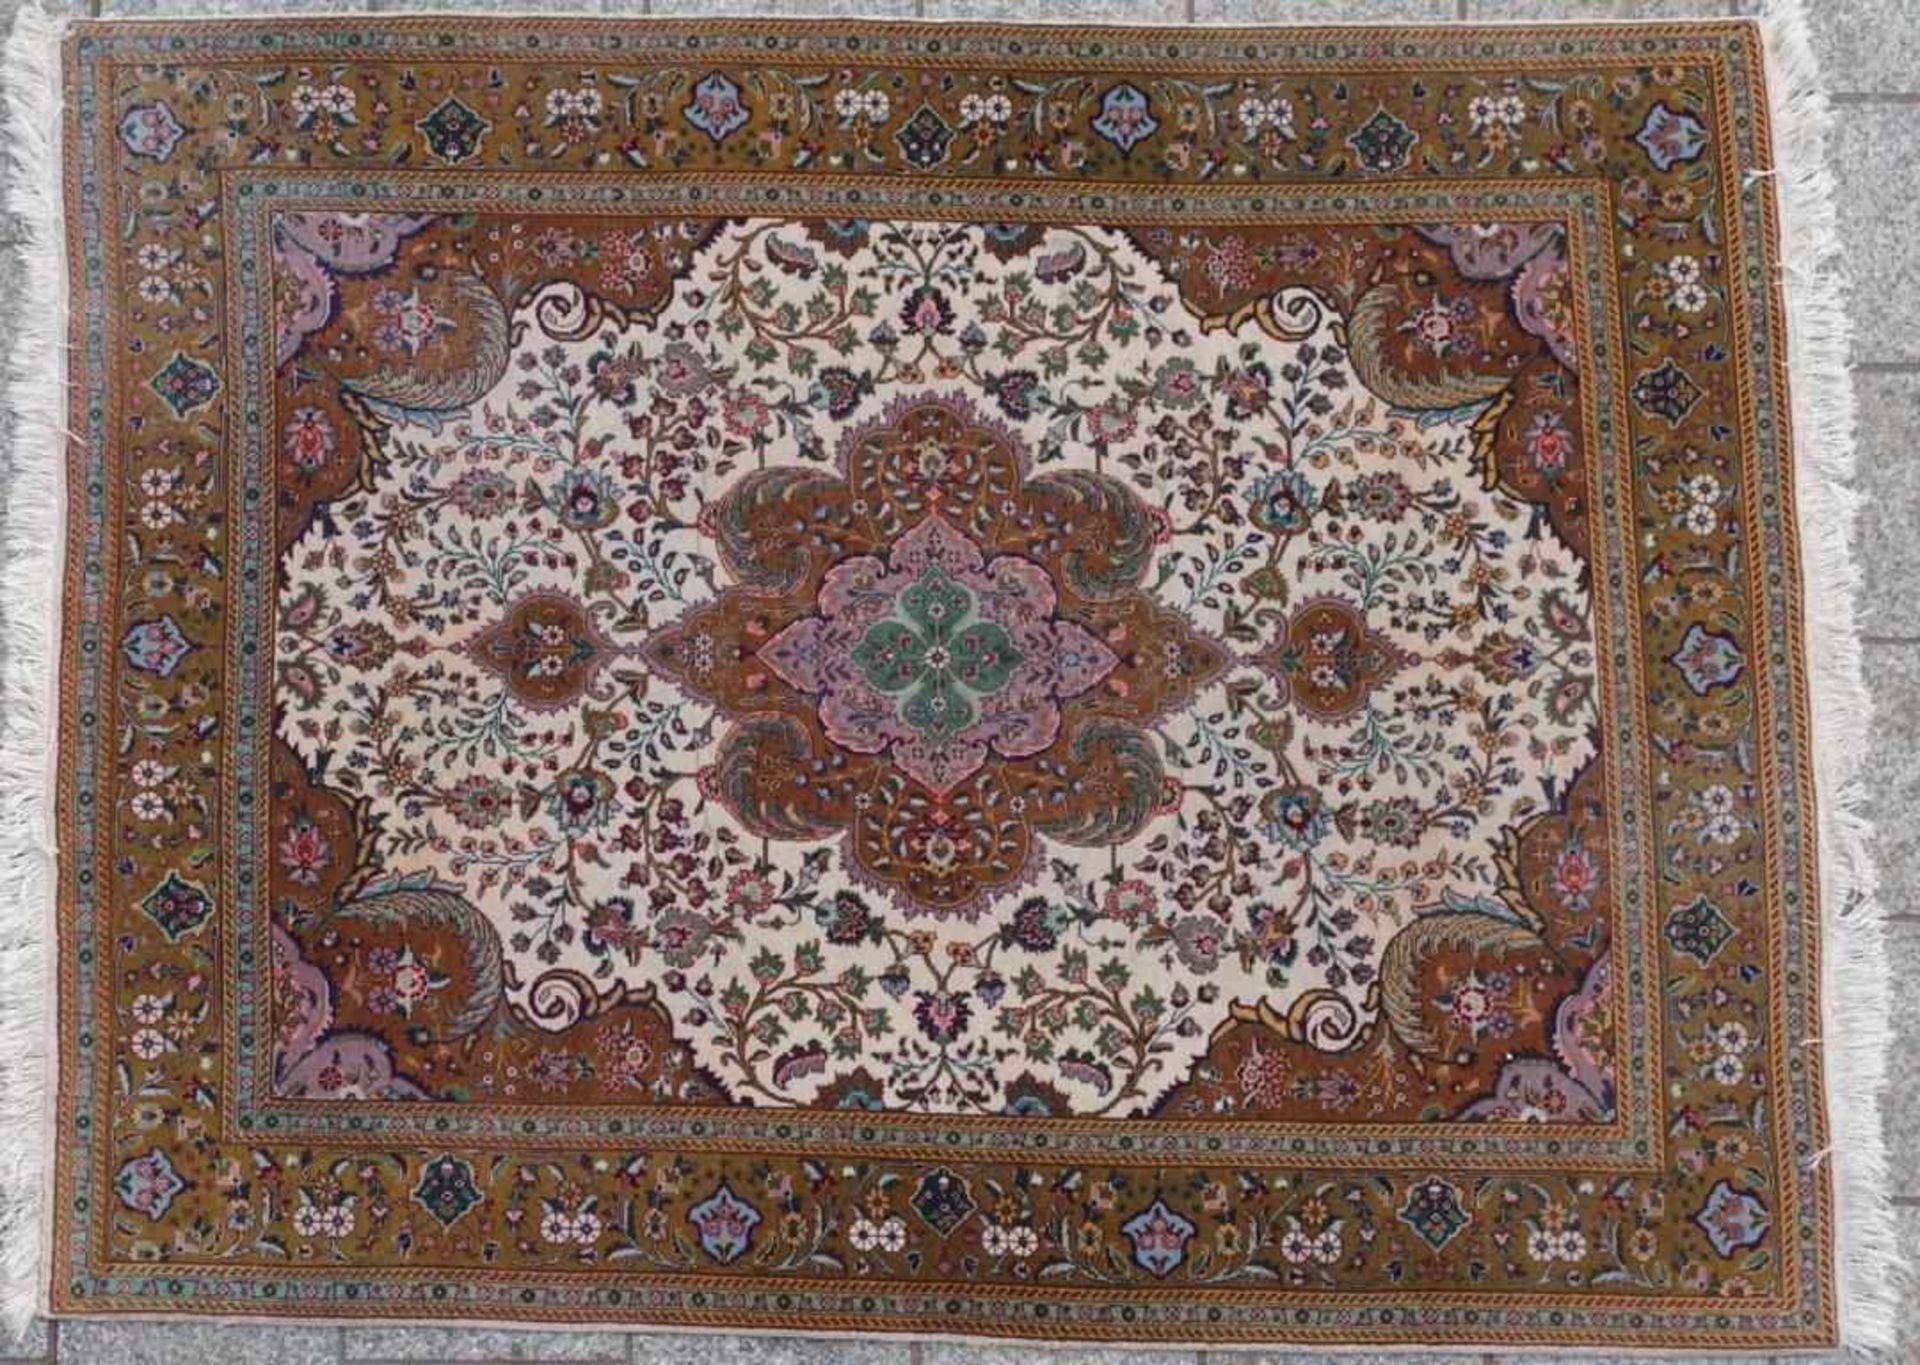 Teppich, Iran, 20.Jh.handgeknüpft, Grundfarben Braun und Beige, florales Muster, 94*145cm, leichte